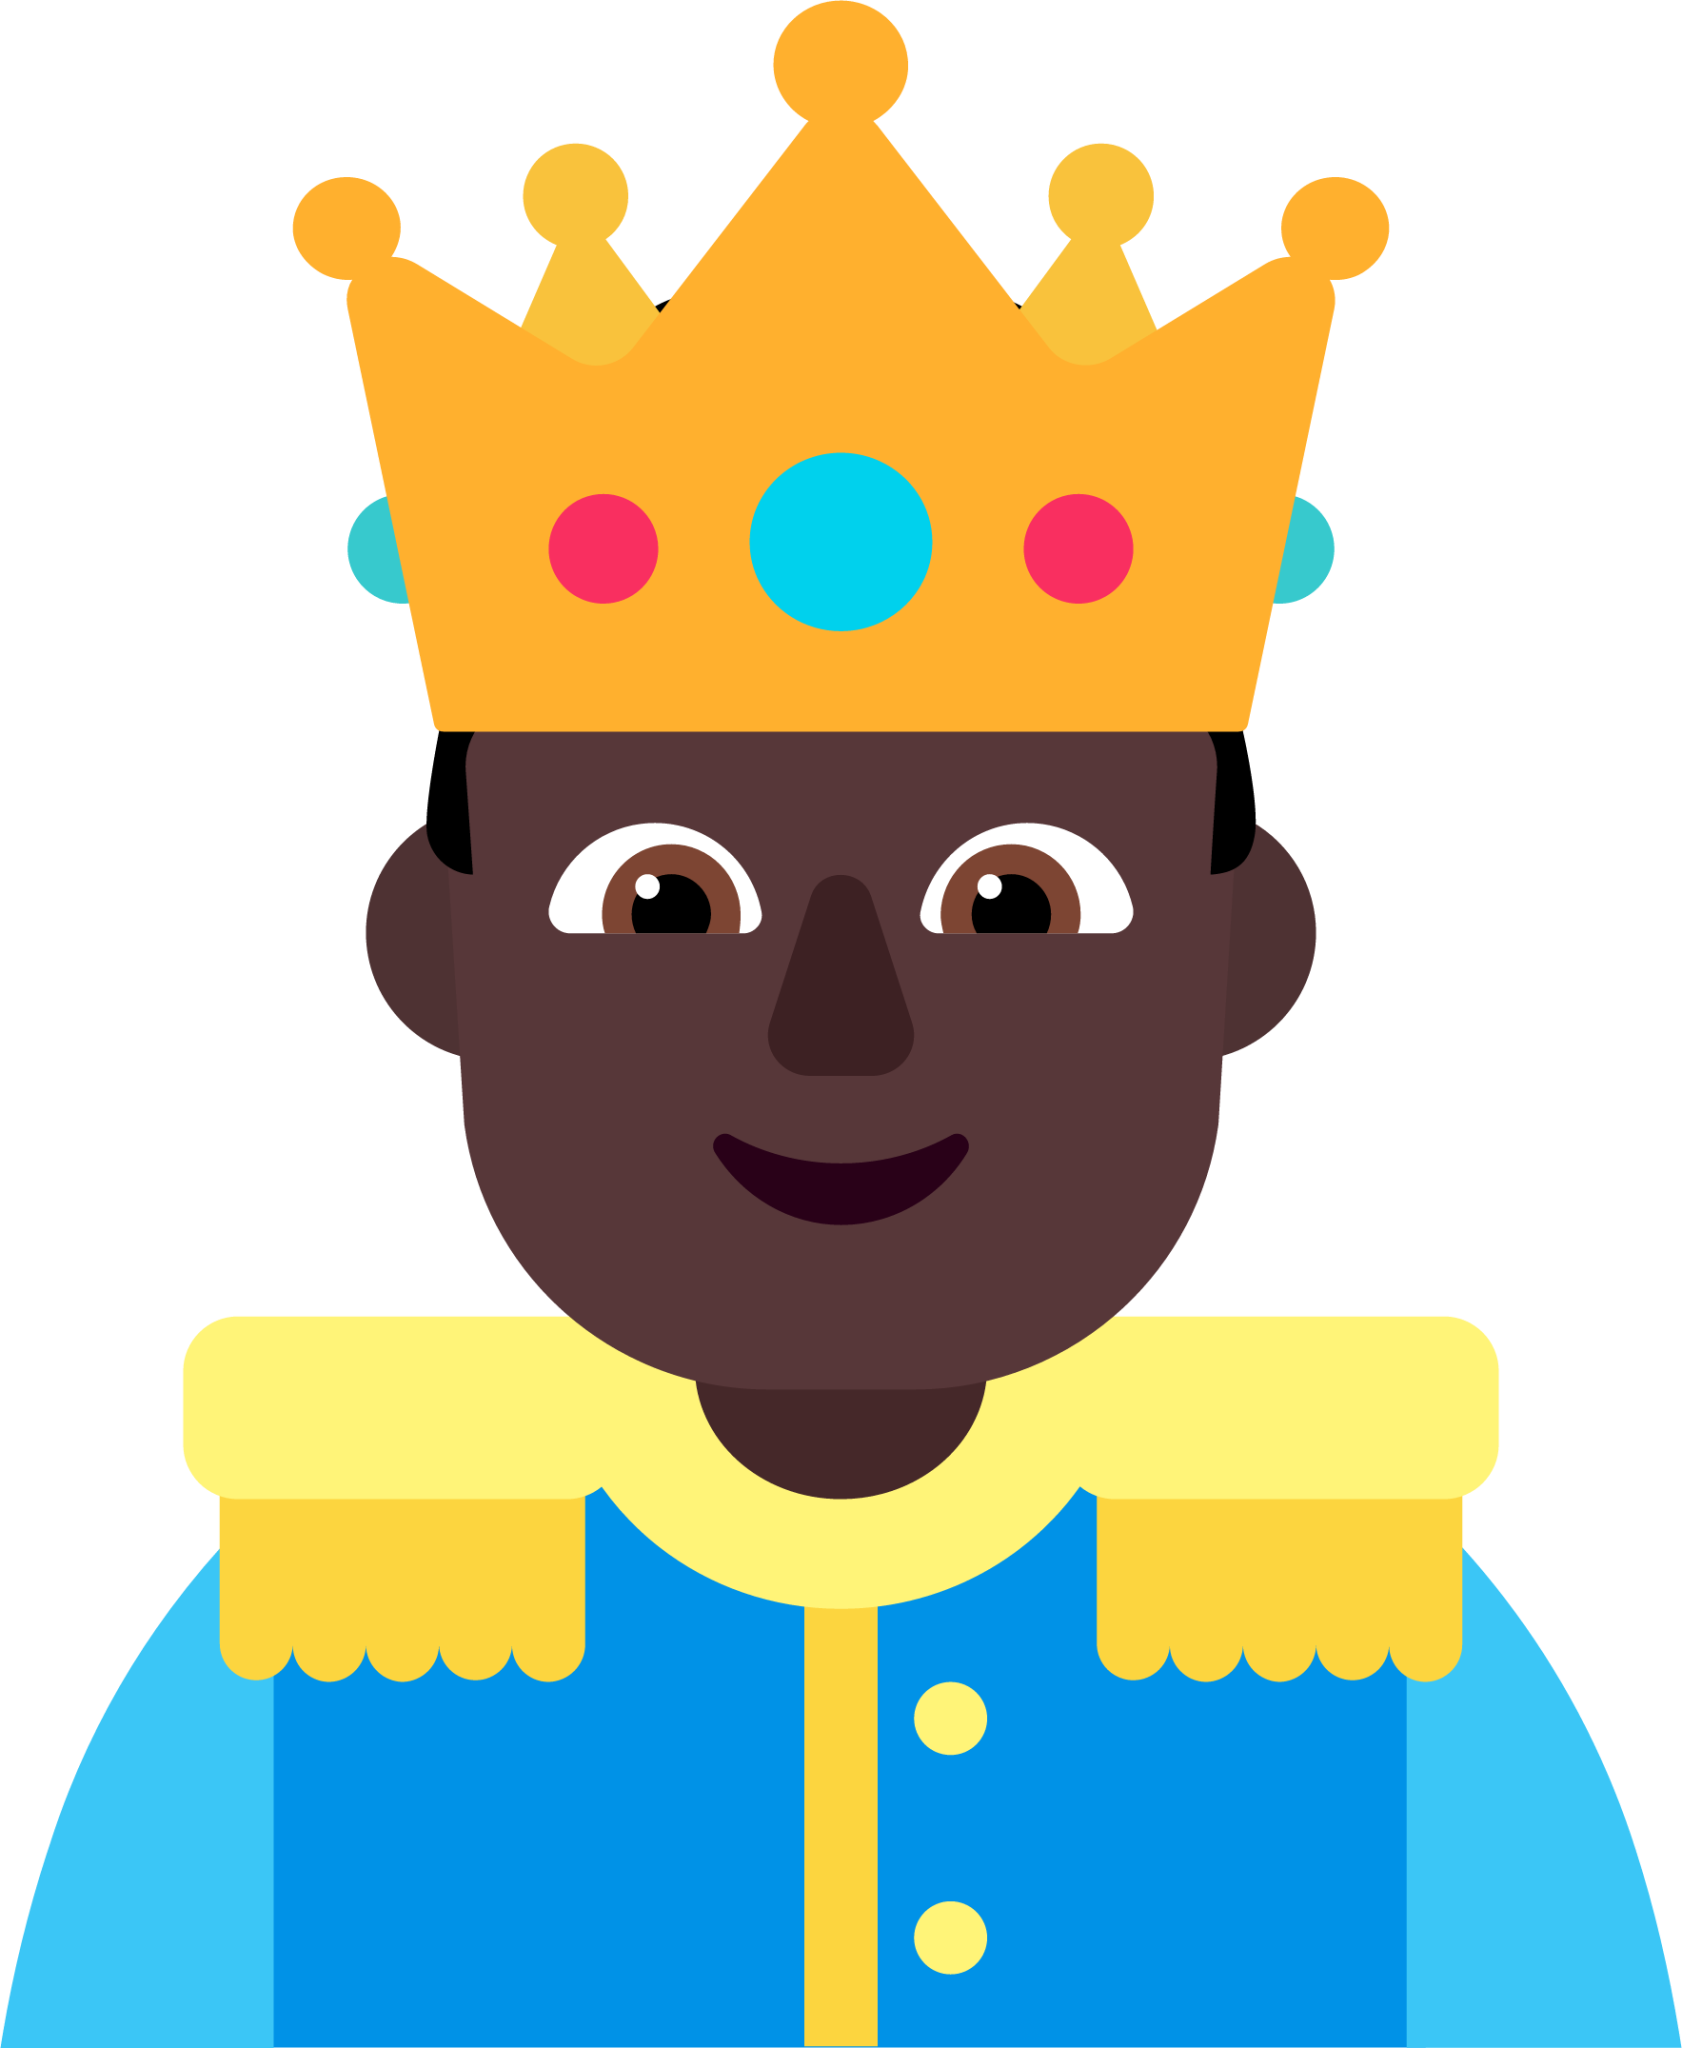 prince dark emoji